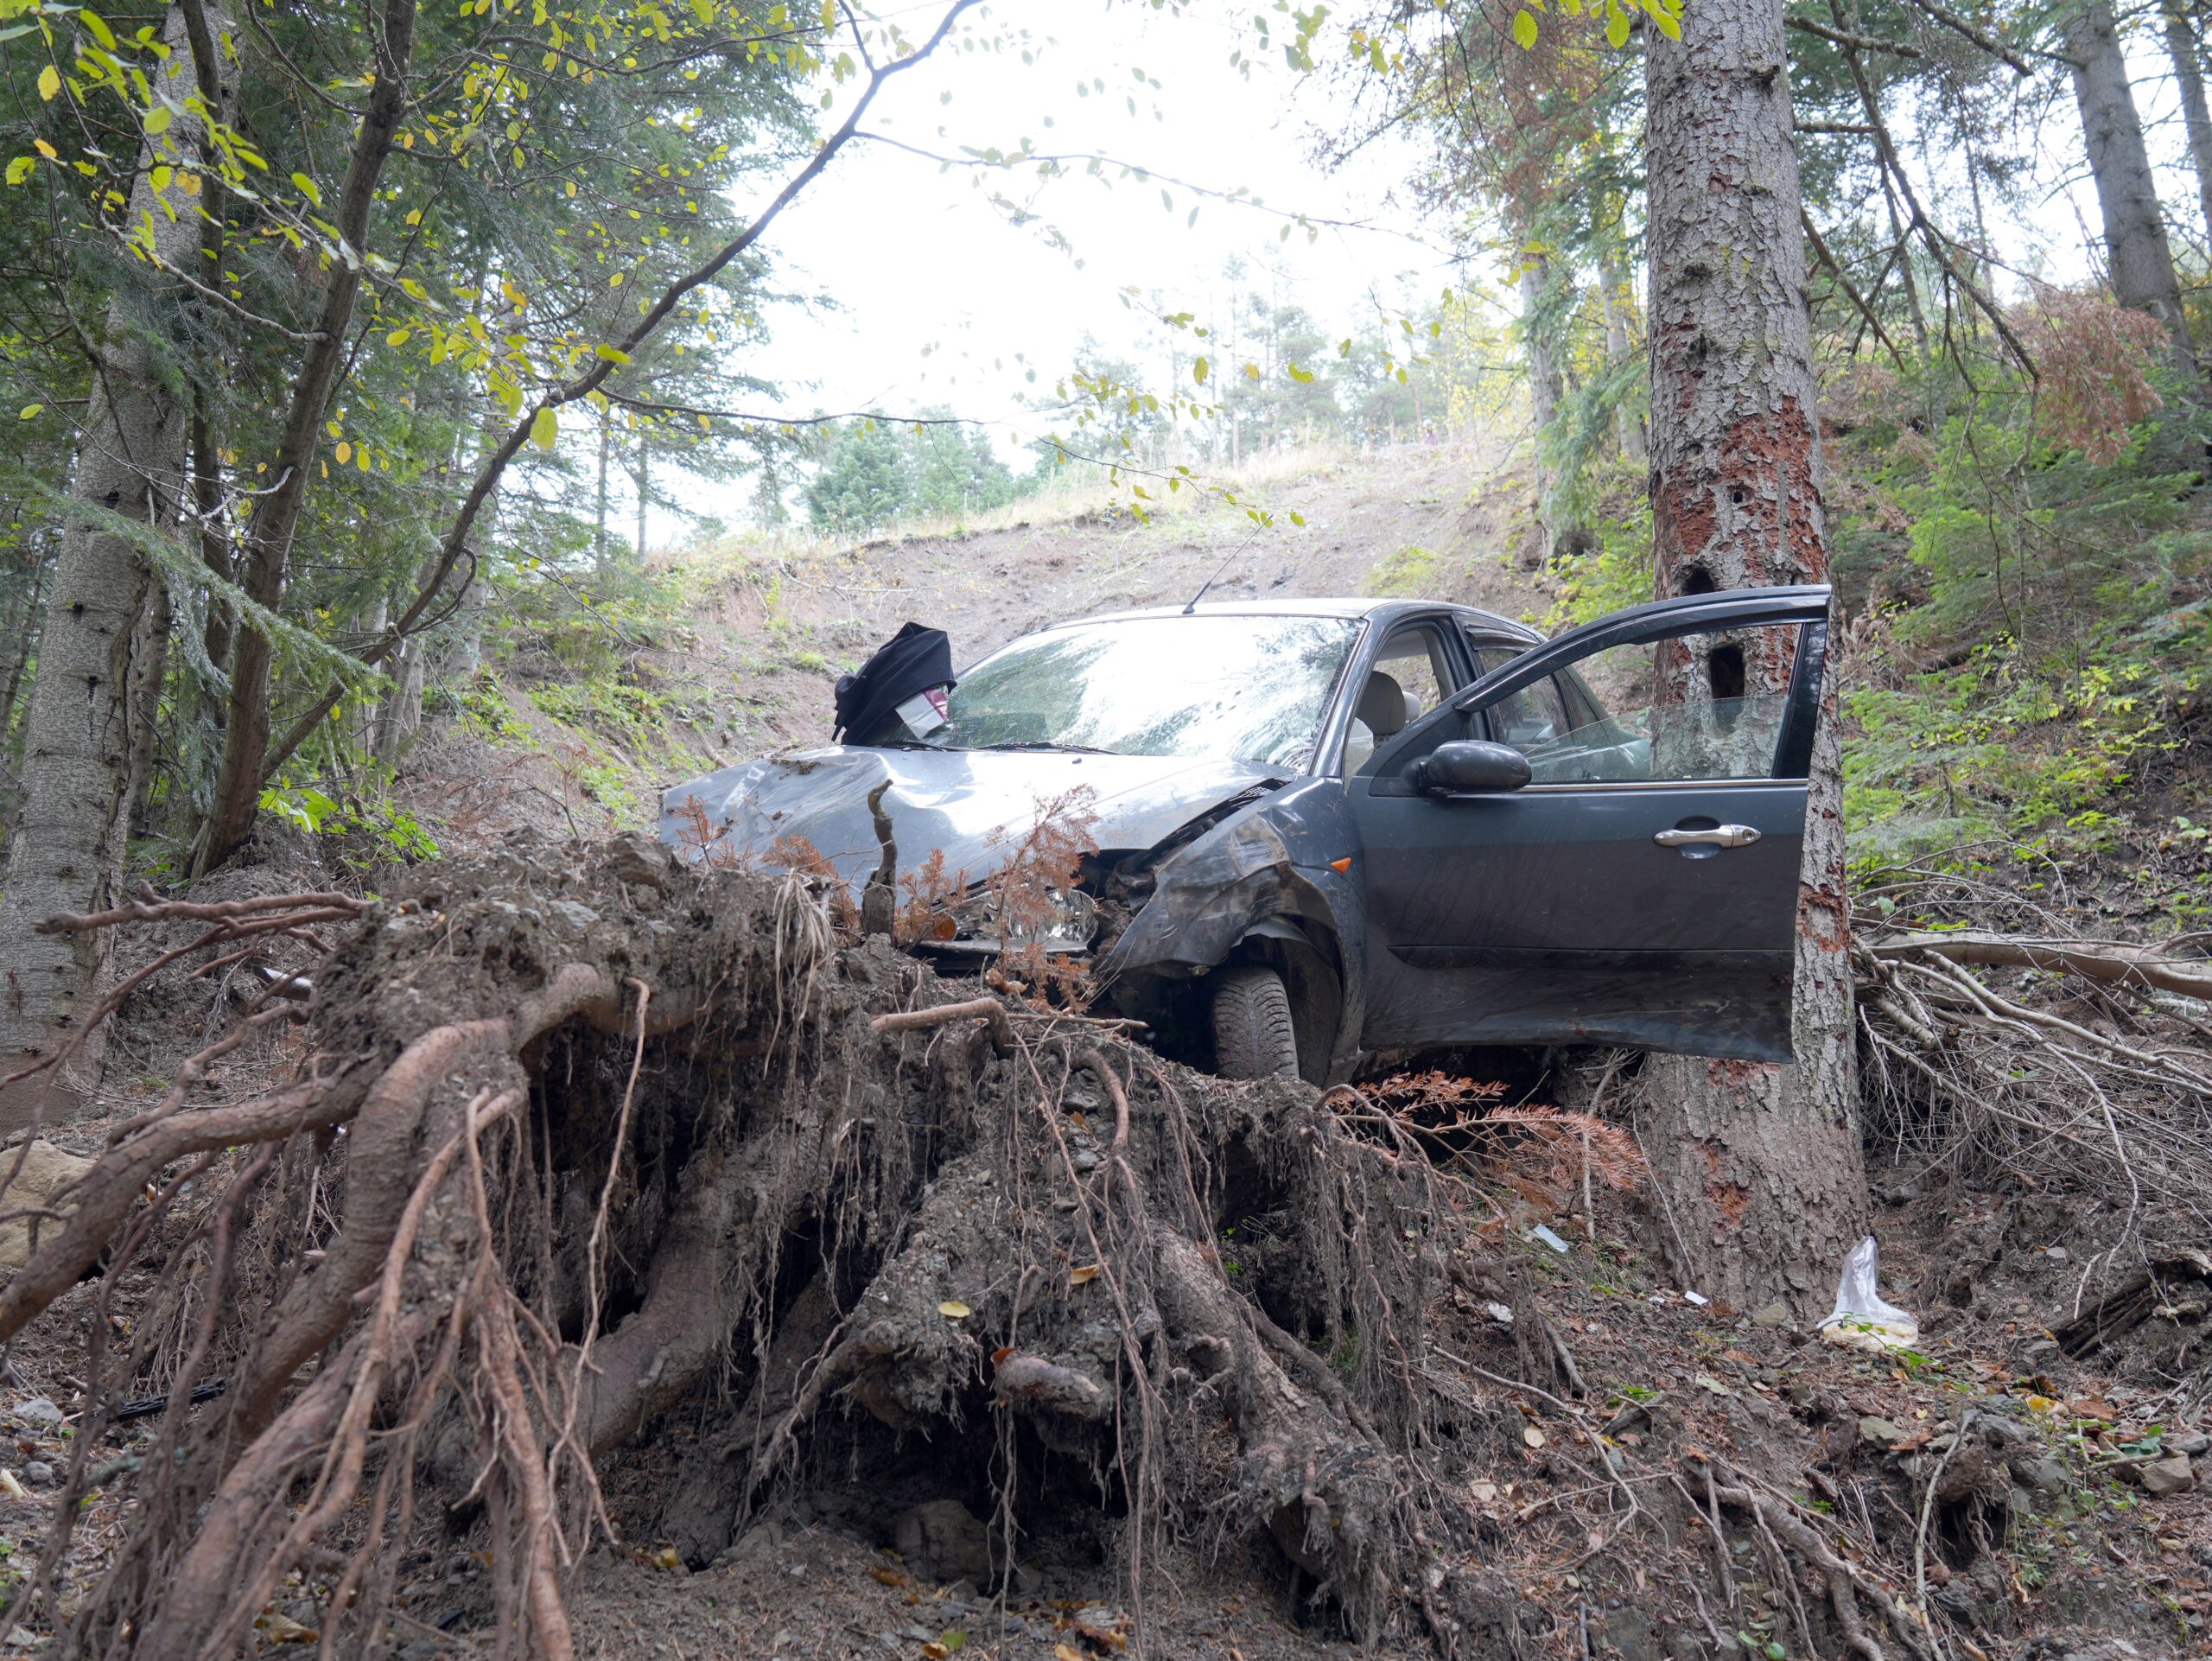 Kastamonu’da bin araç ormanlık alanda uçuruma düştü. 100 metreden yuvarlanan araçtaki 3 kişi yaralandı.